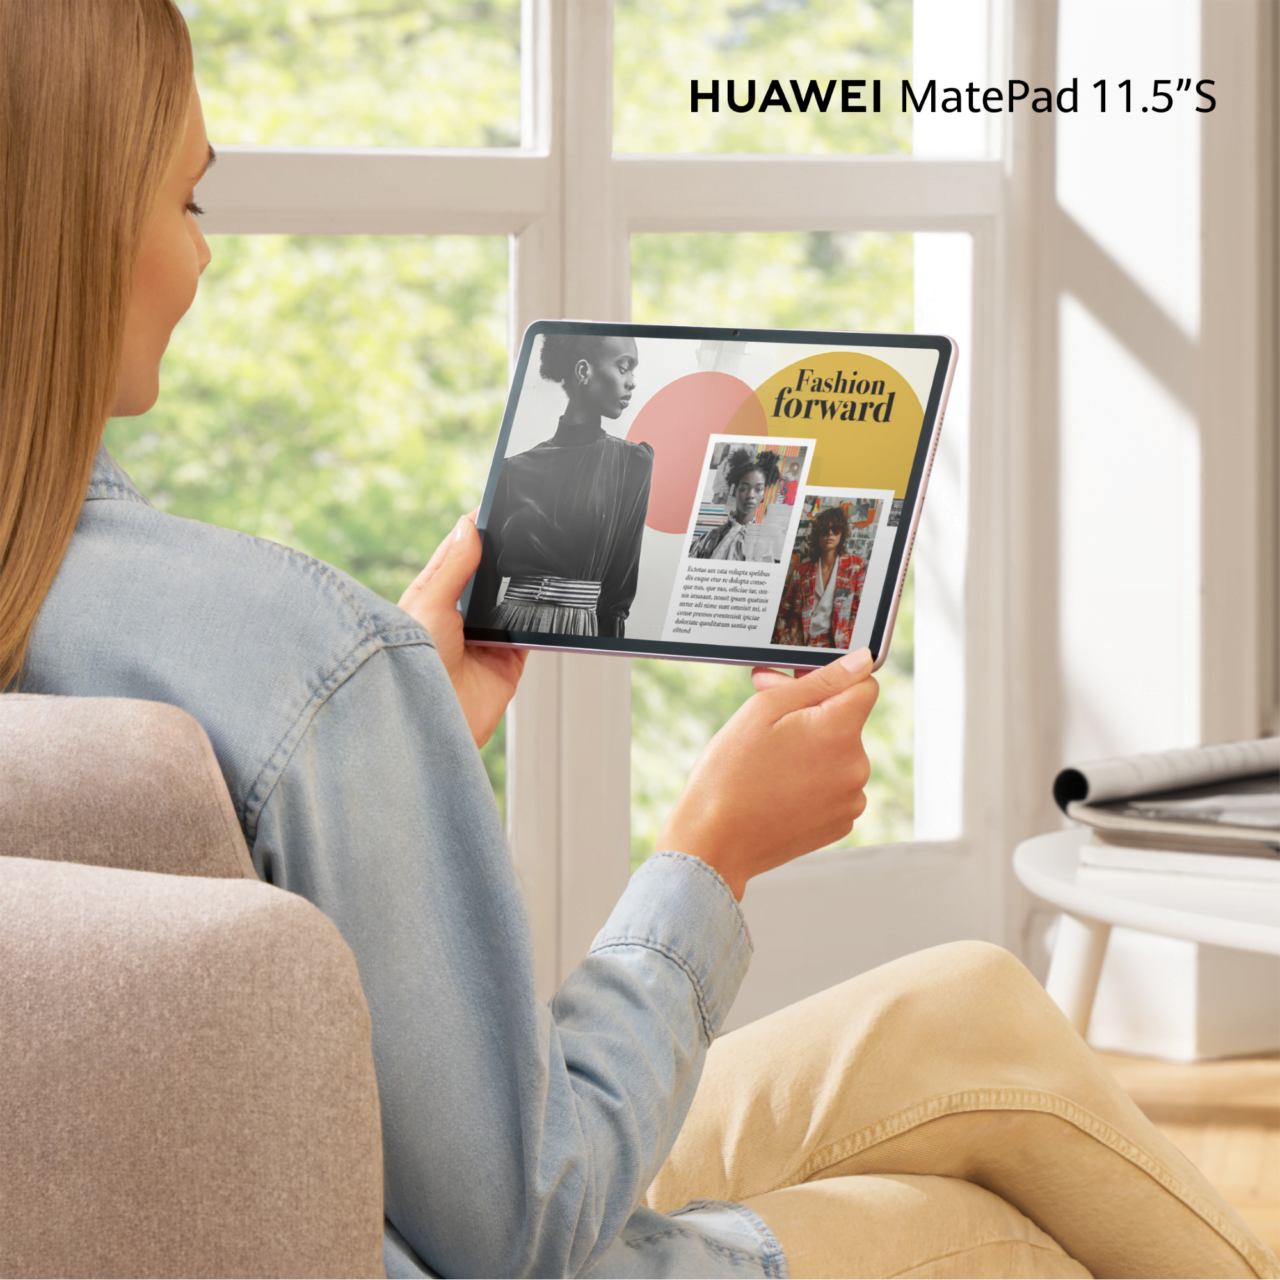 Kobieta trzymająca tablet Huawei MatePad 11.5"S, czytająca magazyn modowy.